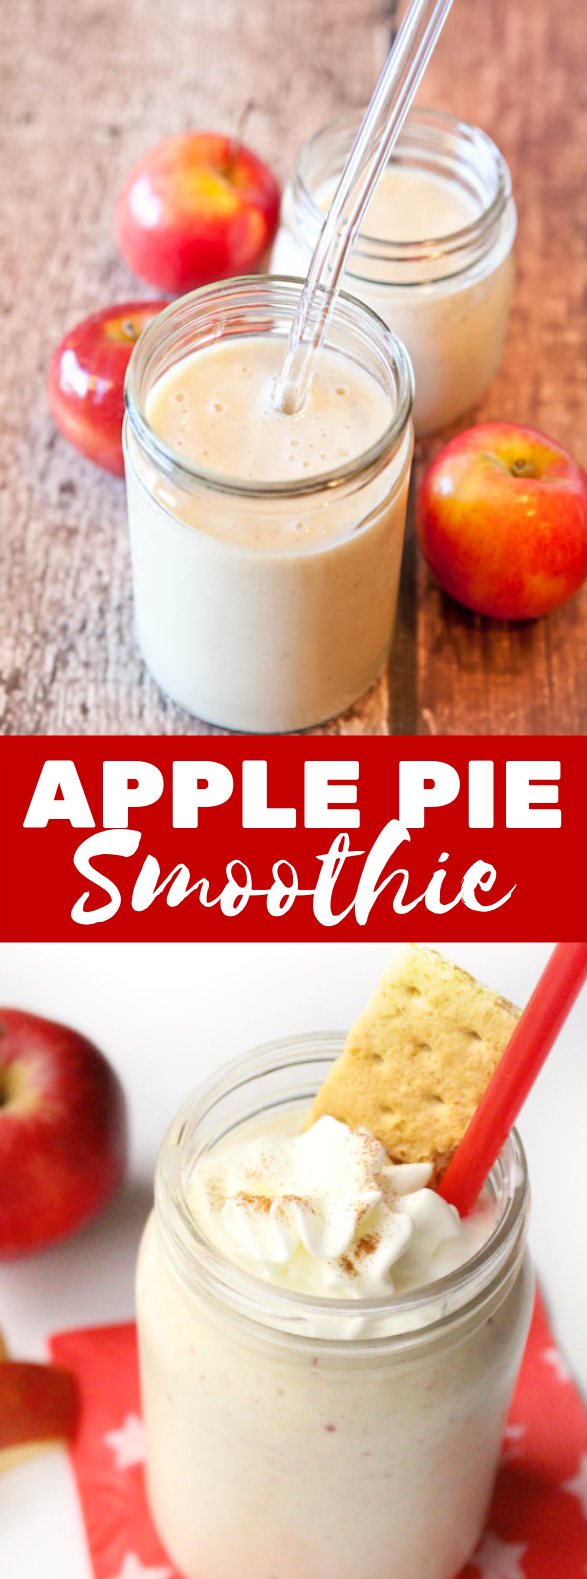 Healthy Apple Pie Smoothie #drinks #breakfast